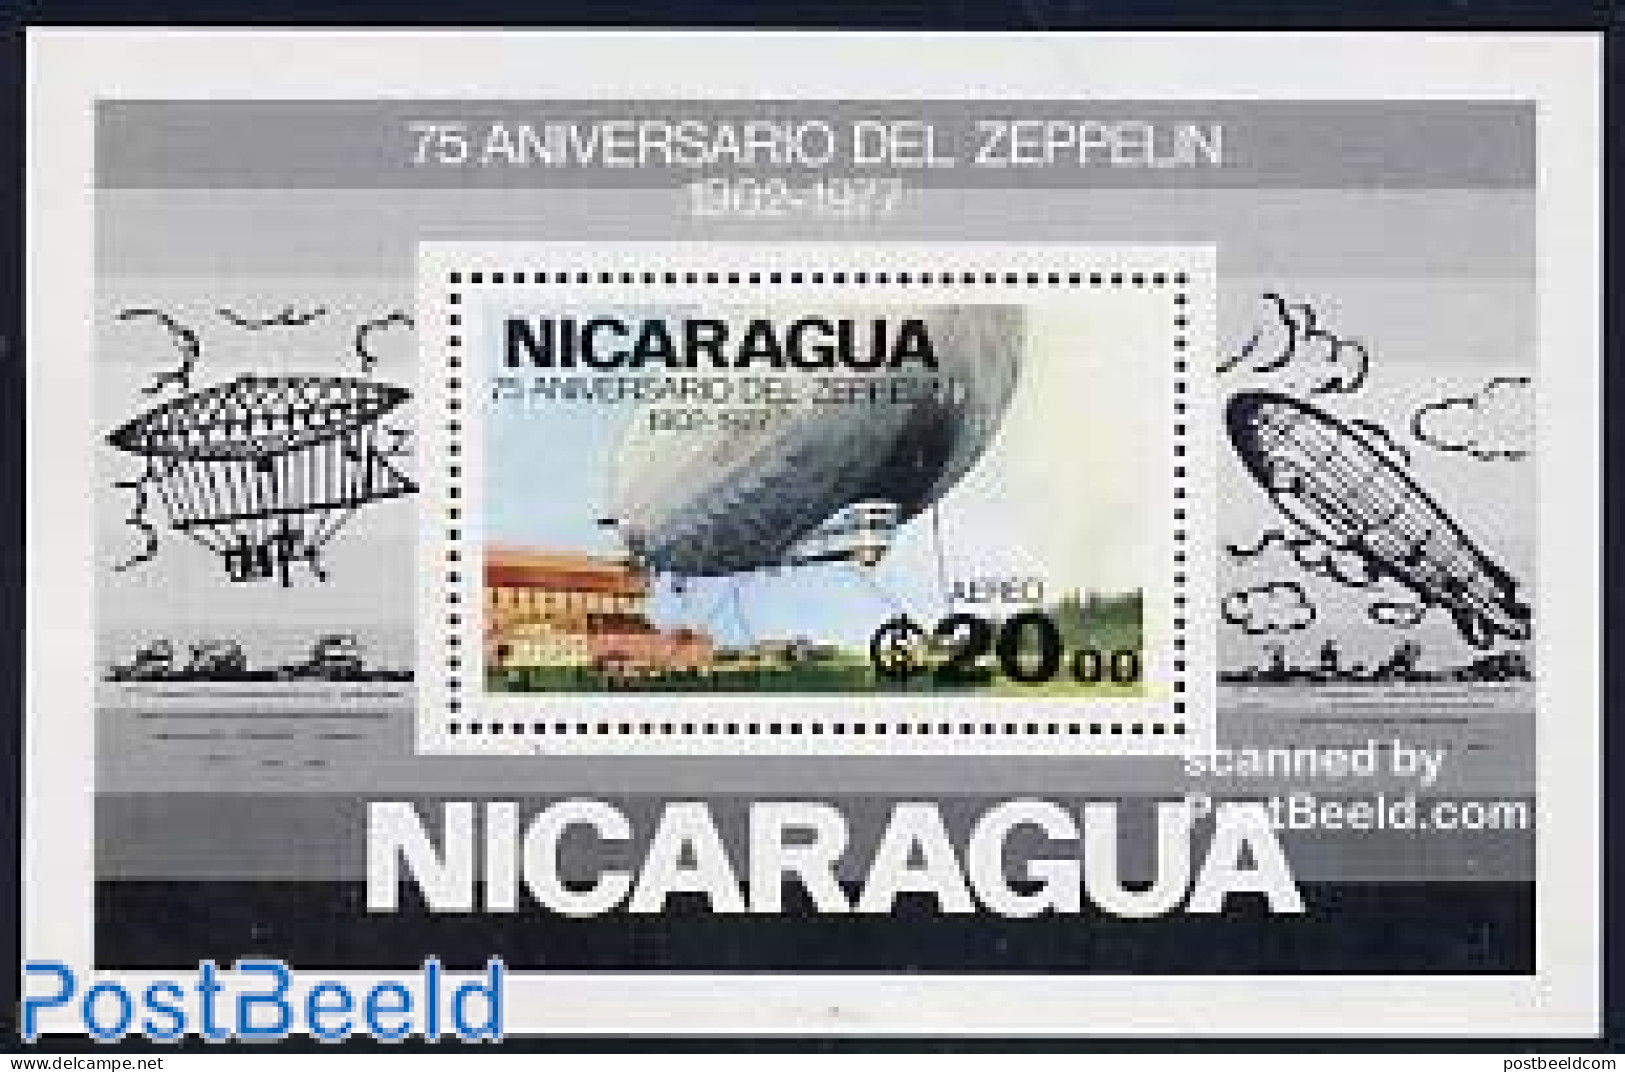 Nicaragua 1977 Zeppelin S/s, Mint NH, Transport - Zeppelins - Zeppelins